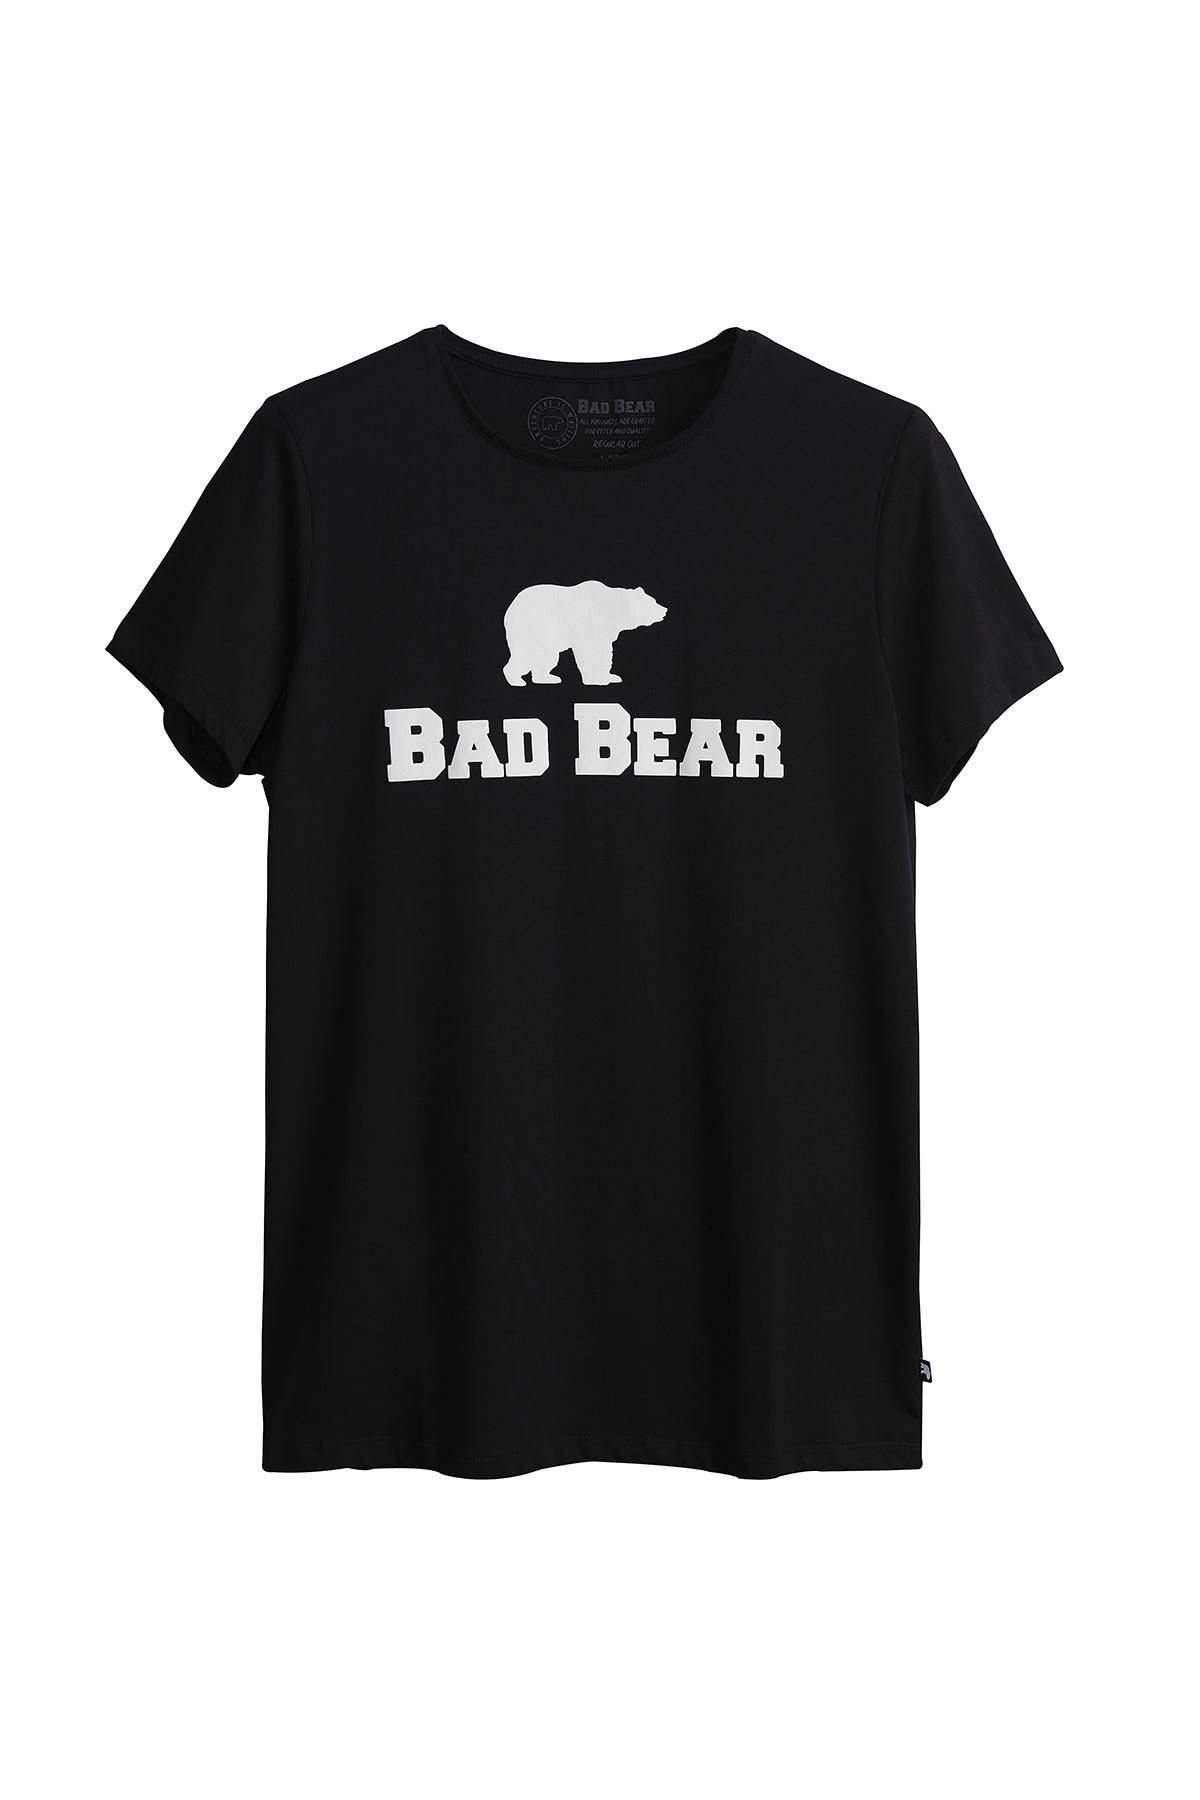 Bad Bear Tee Erkek Tshirt 19.01.07.002-c01